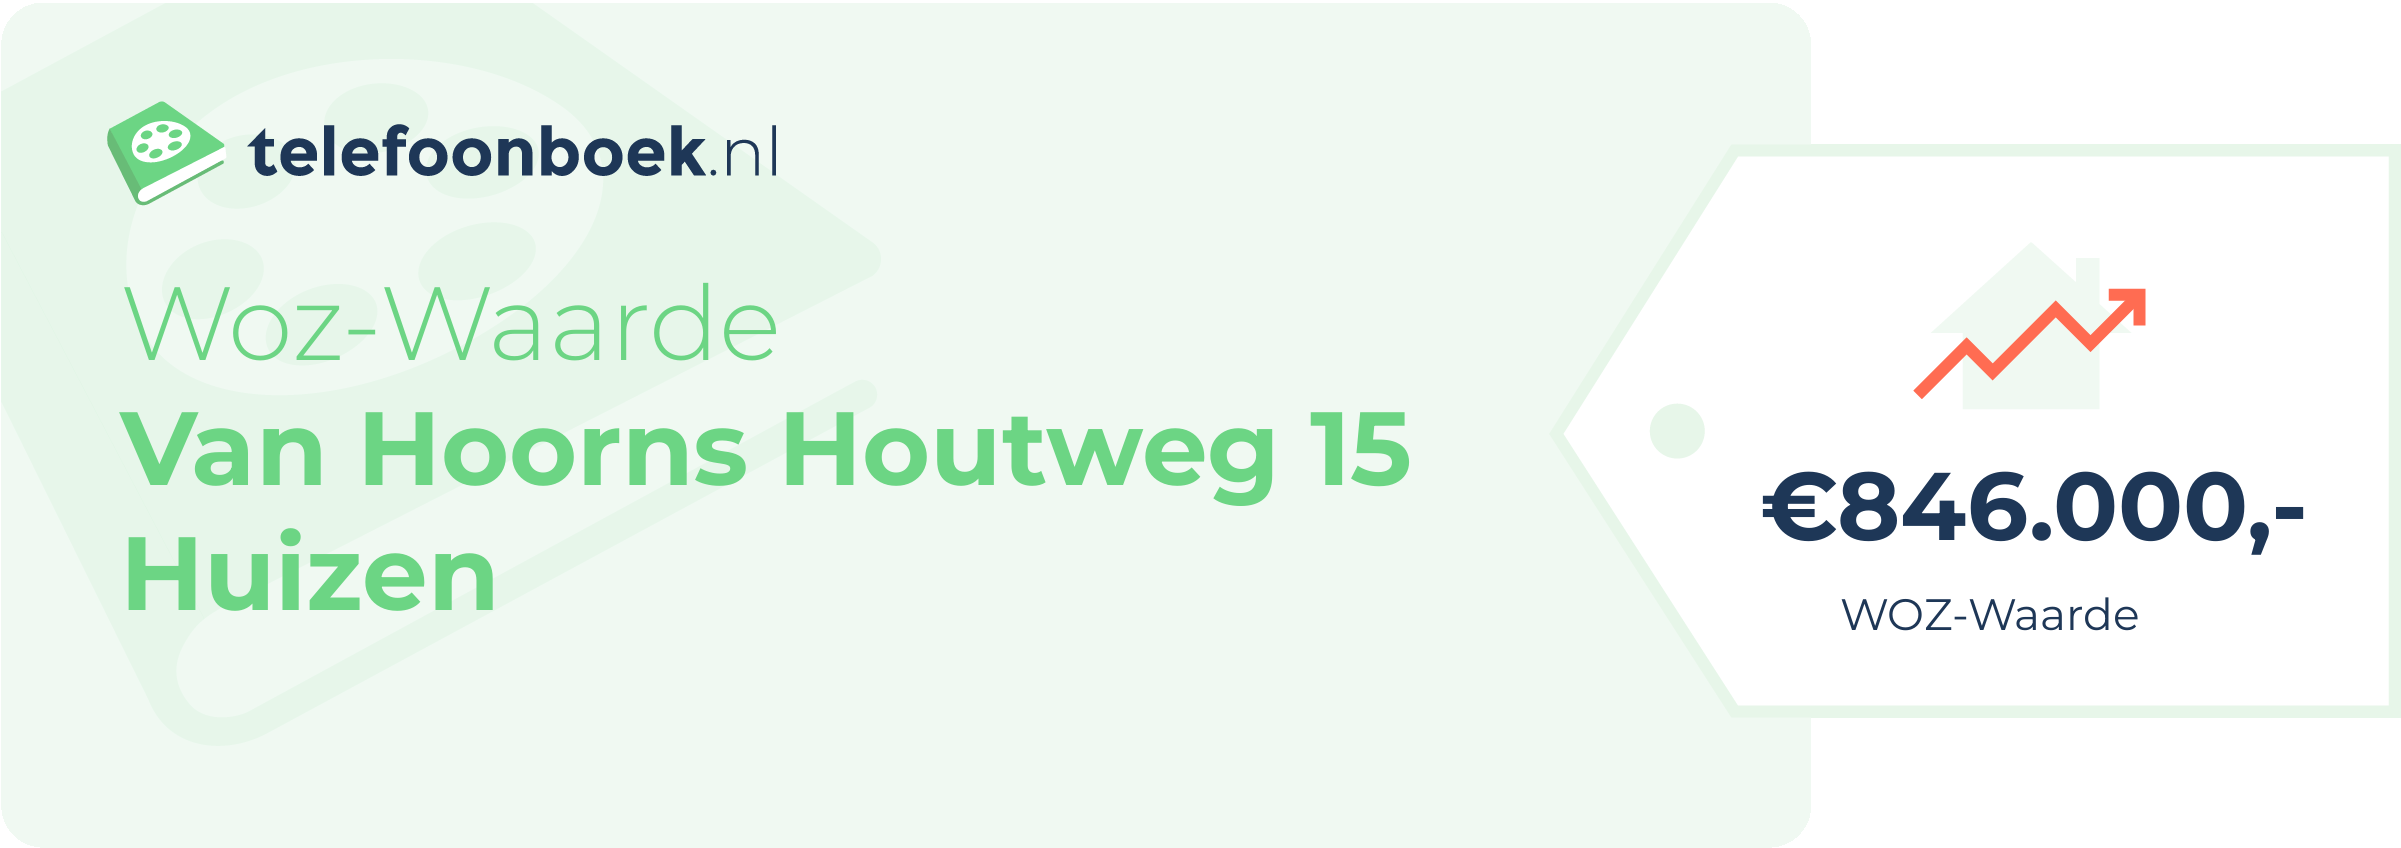 WOZ-waarde Van Hoorns Houtweg 15 Huizen